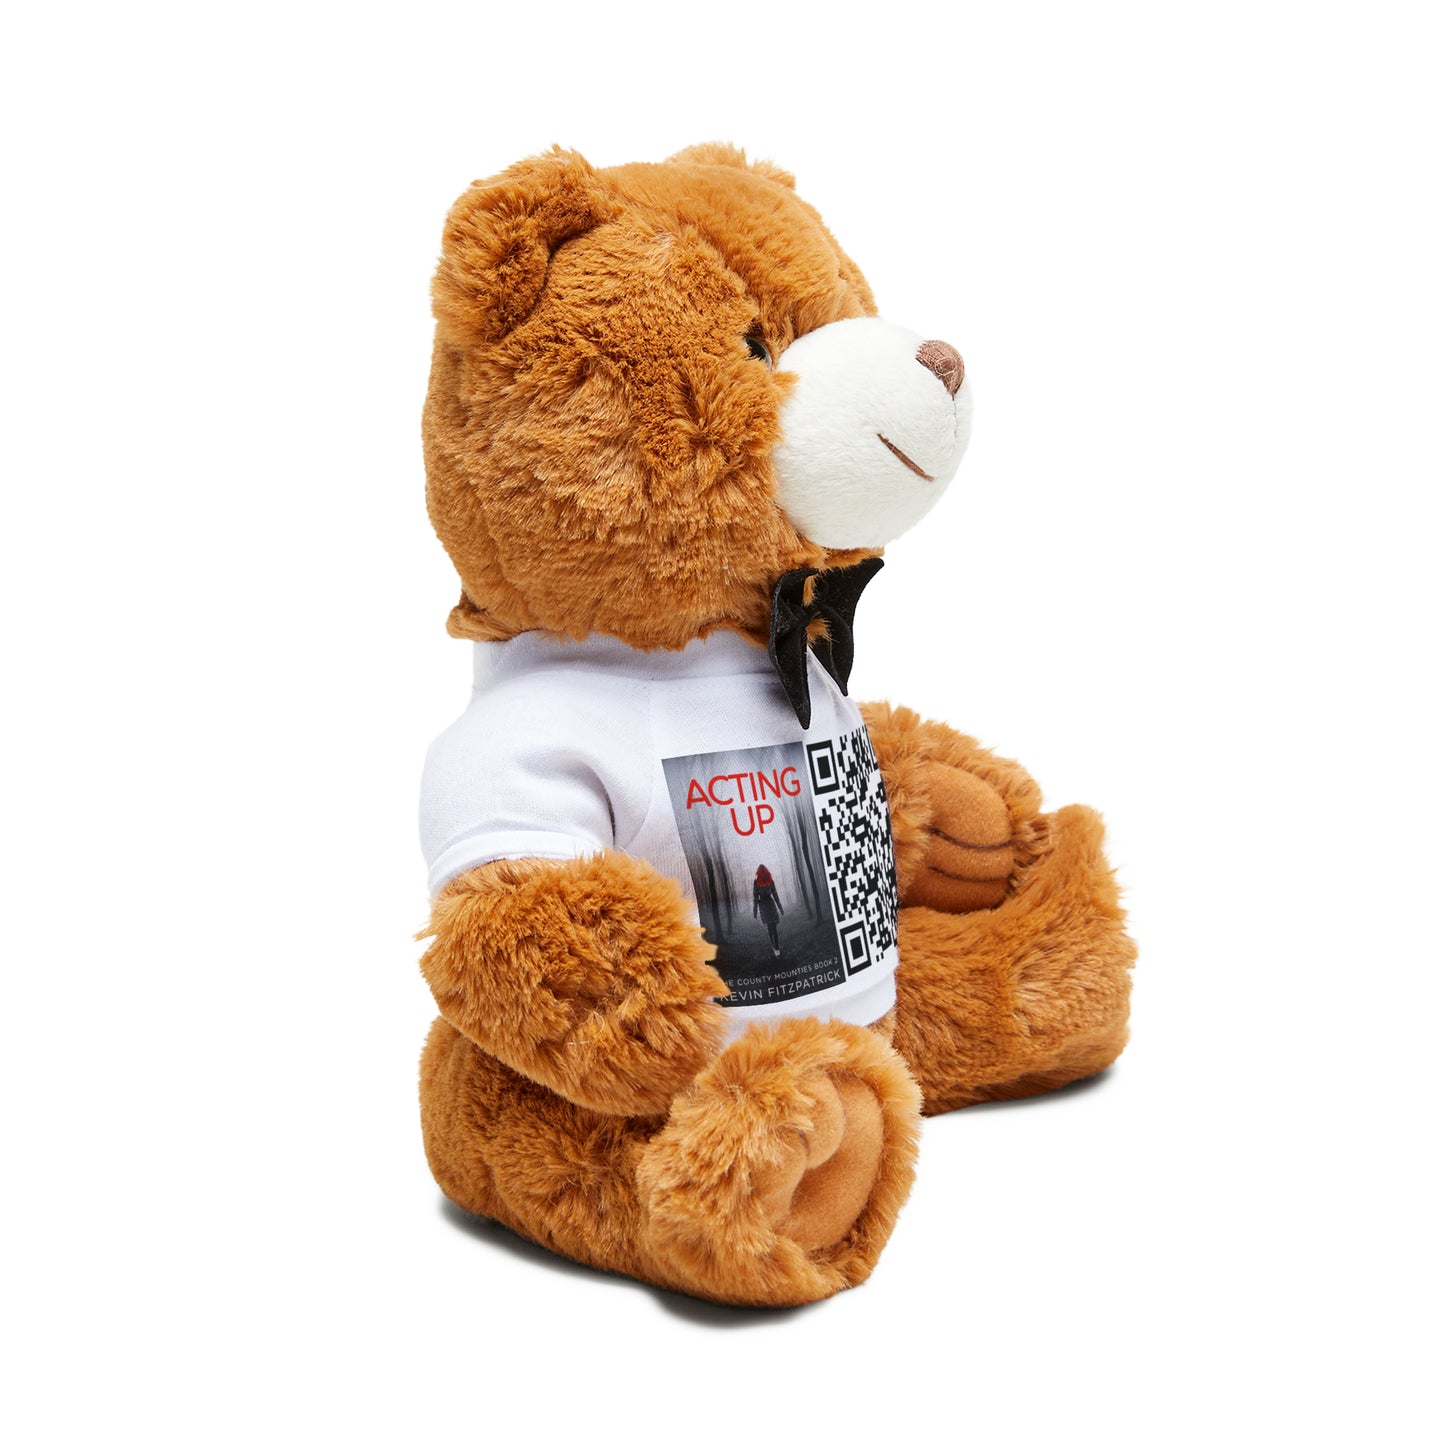 Acting Up - Teddy Bear